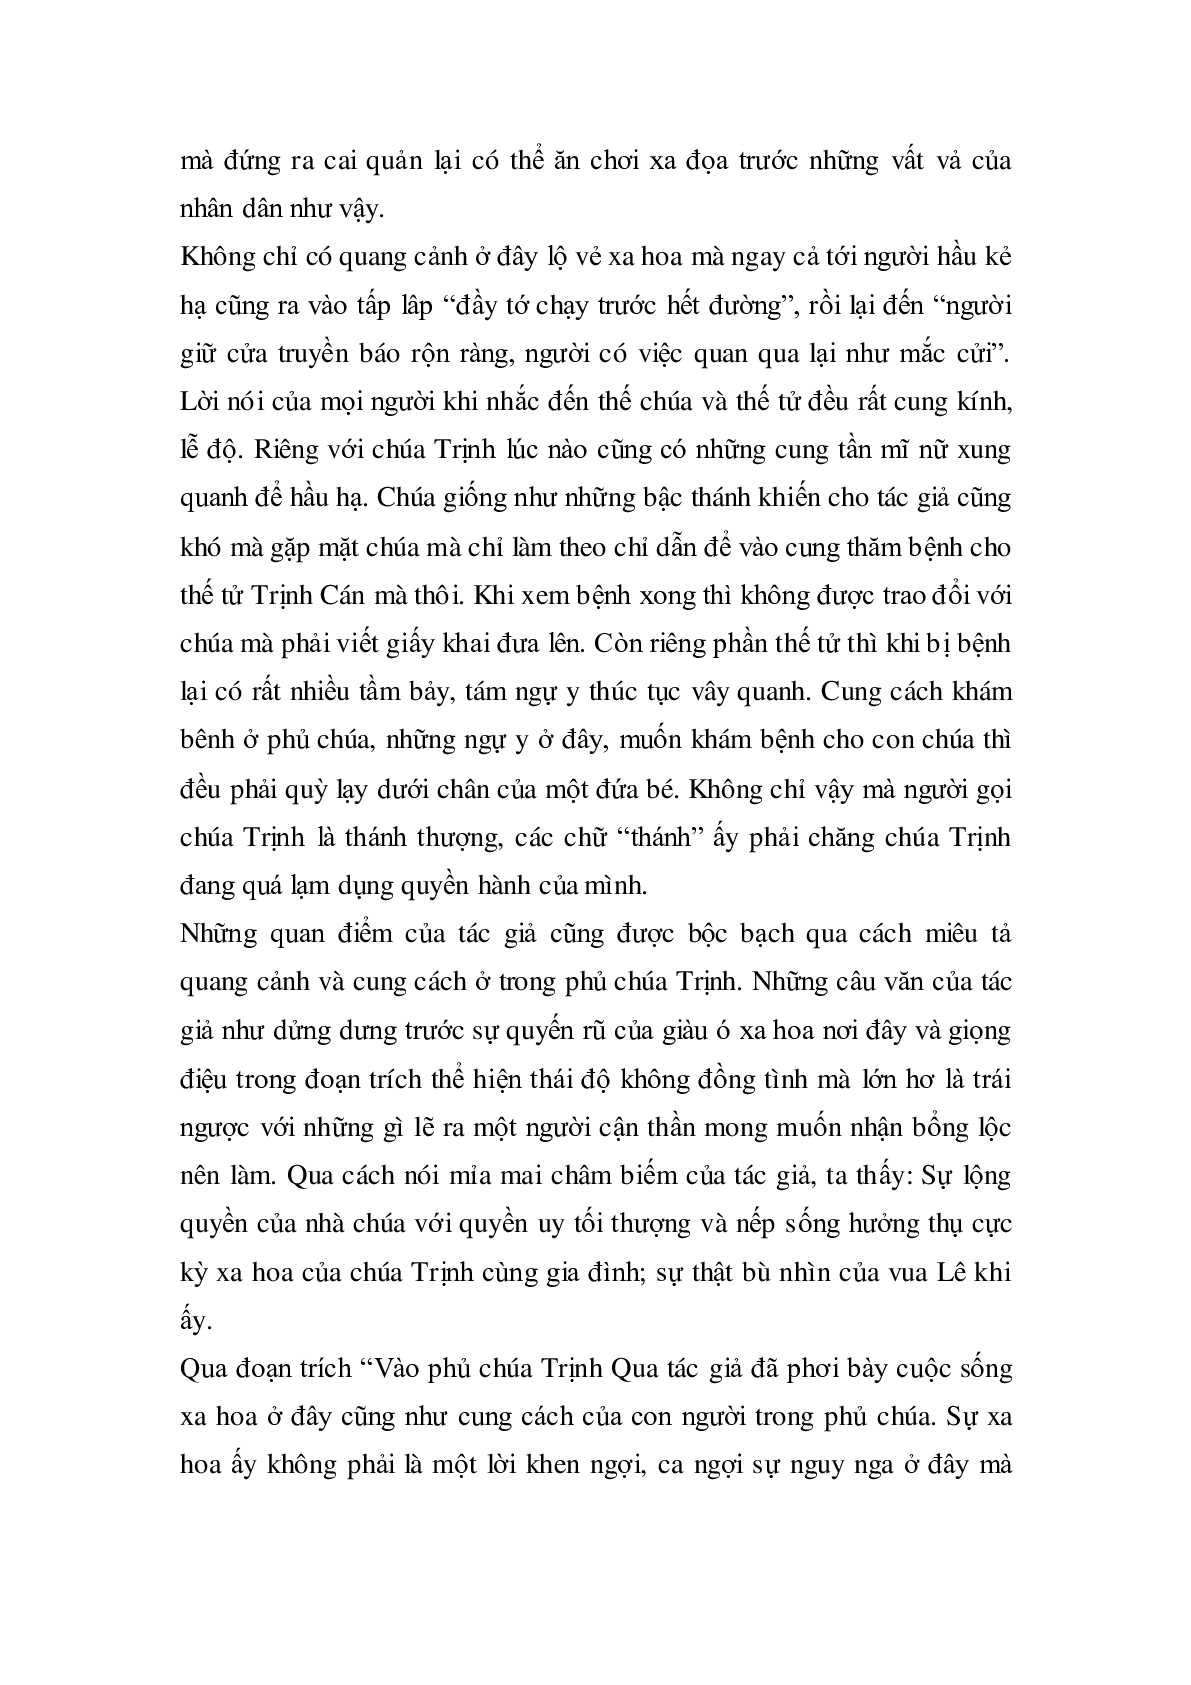 Soạn bài Vào phủ chúa Trịnh của Lê Hữu Trác - ngắn nhất Soạn văn 11 (trang 8)